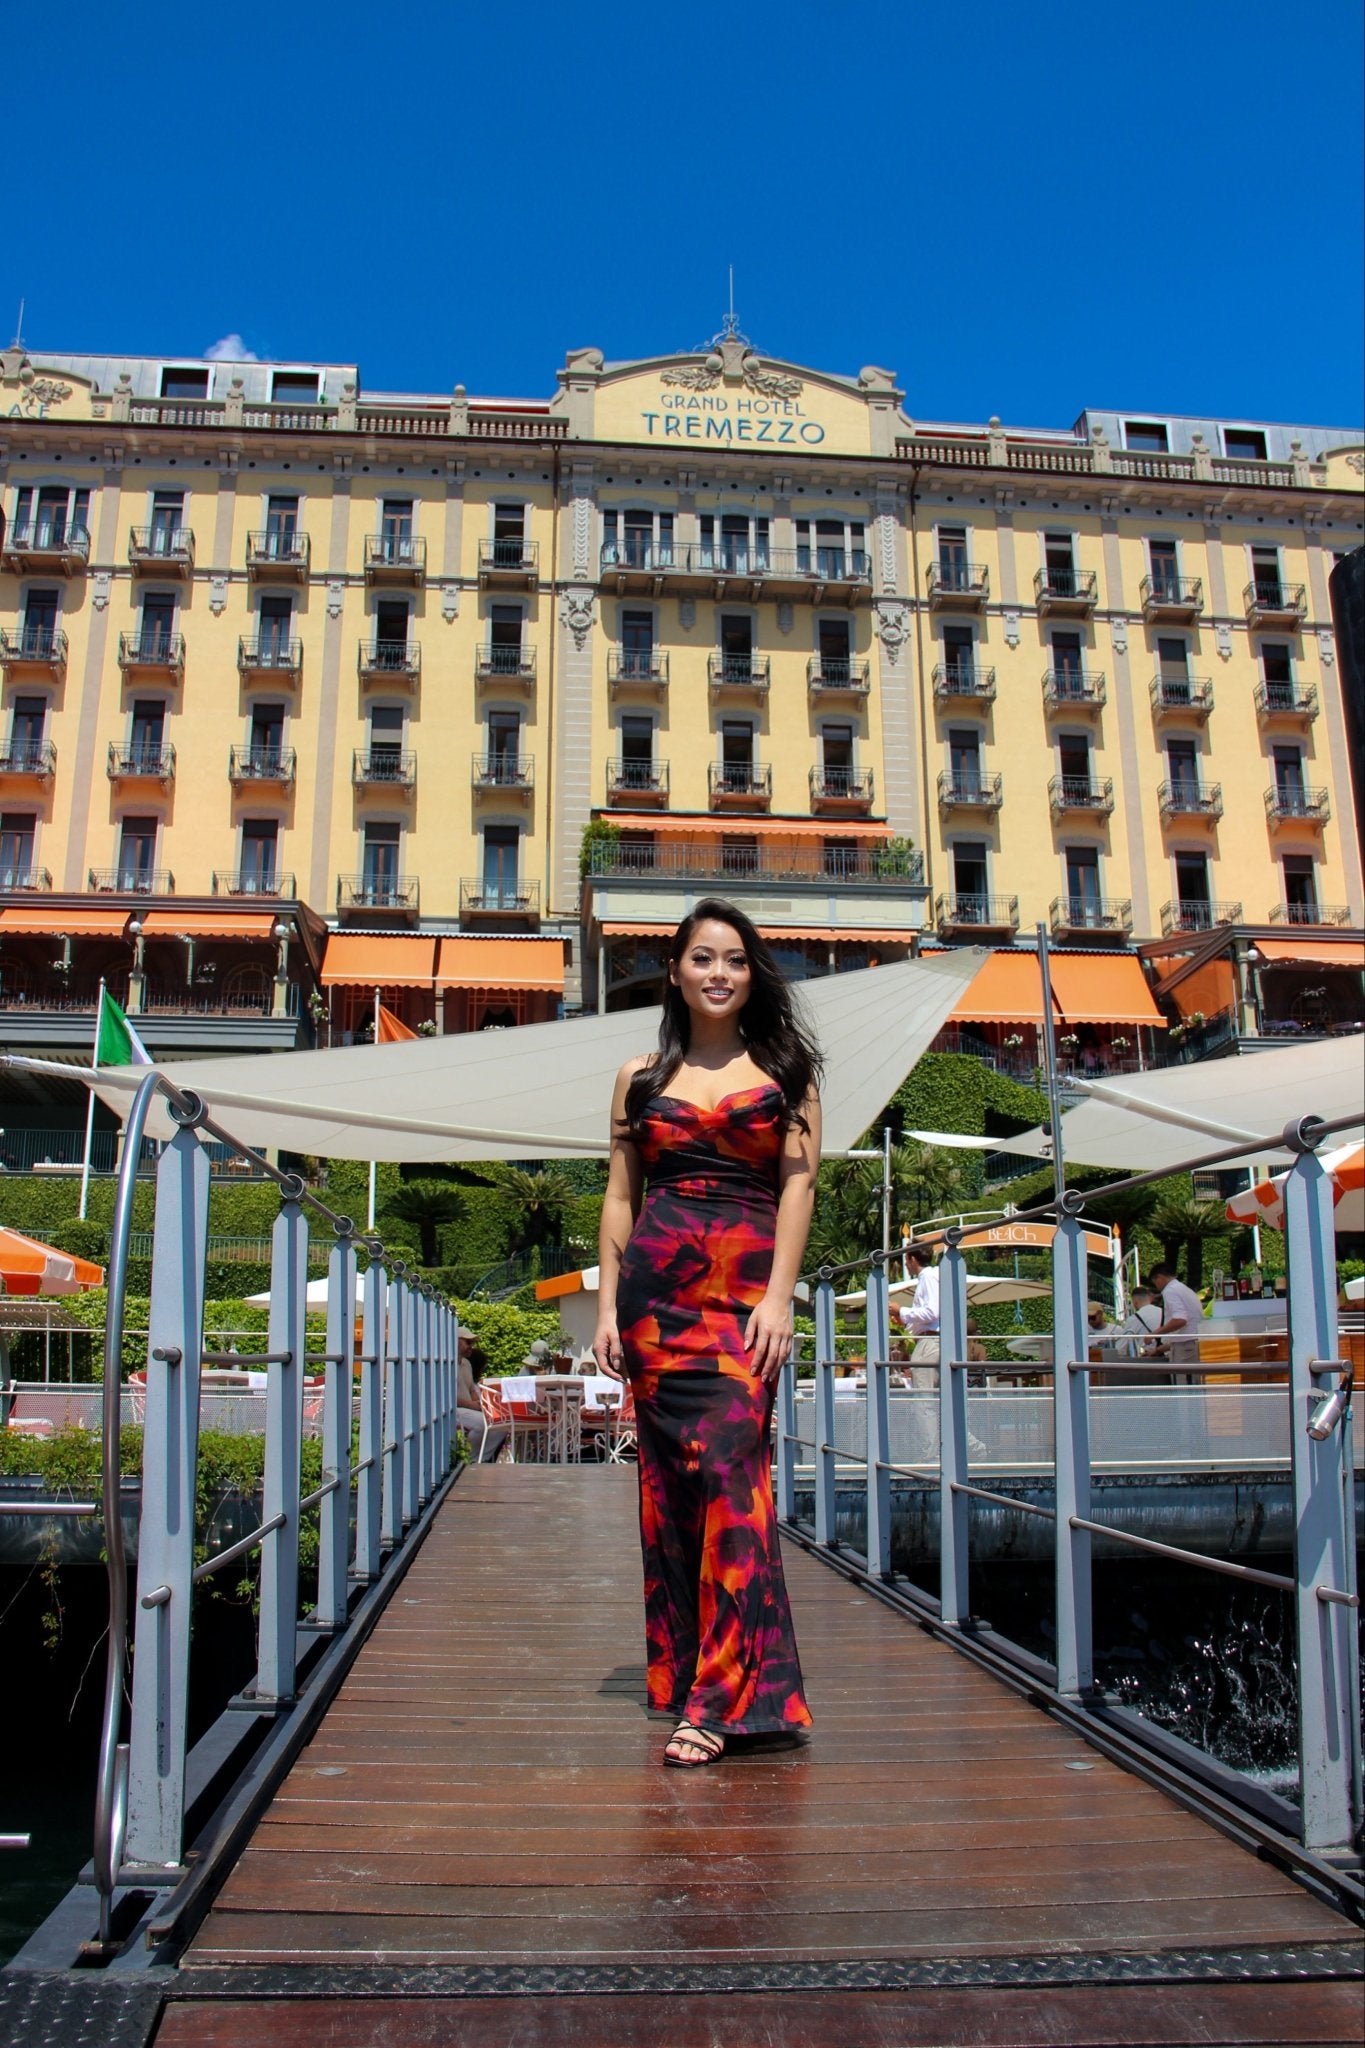 Honeymoon Photoshoot at Grand Hotel Tremezzo - Lake Como Photographer - FRAQAIR